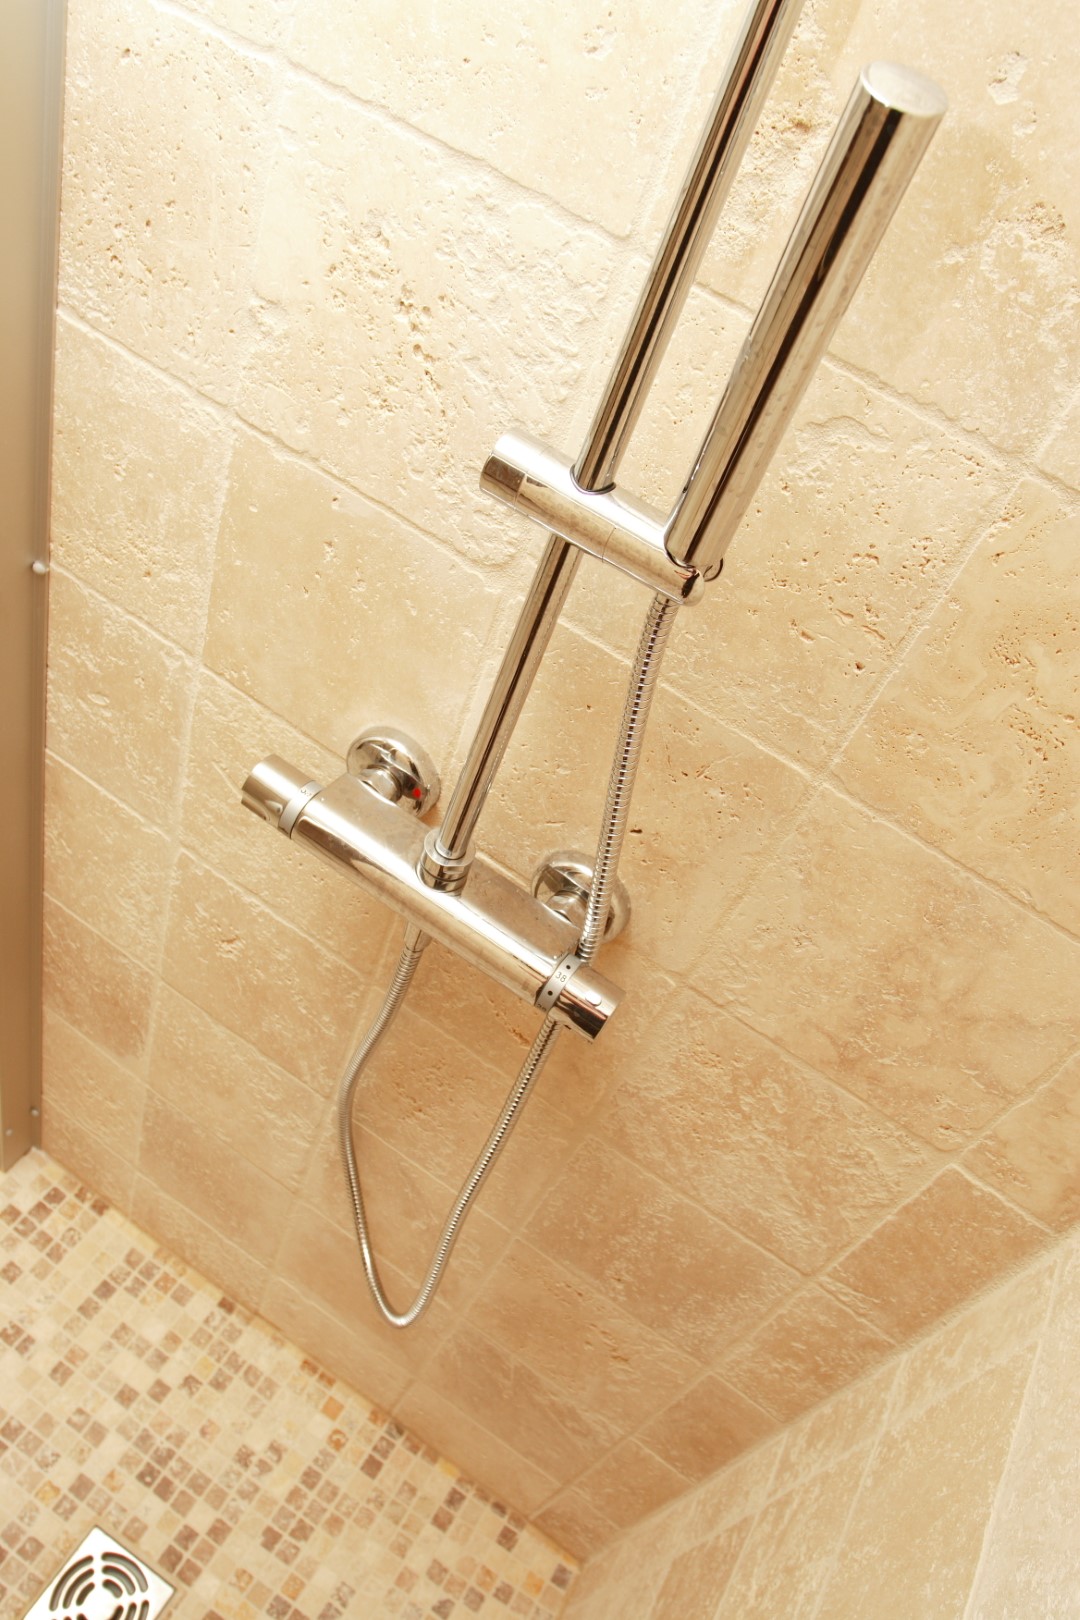 Mitigeur de douche : à quelle hauteur le placer ?